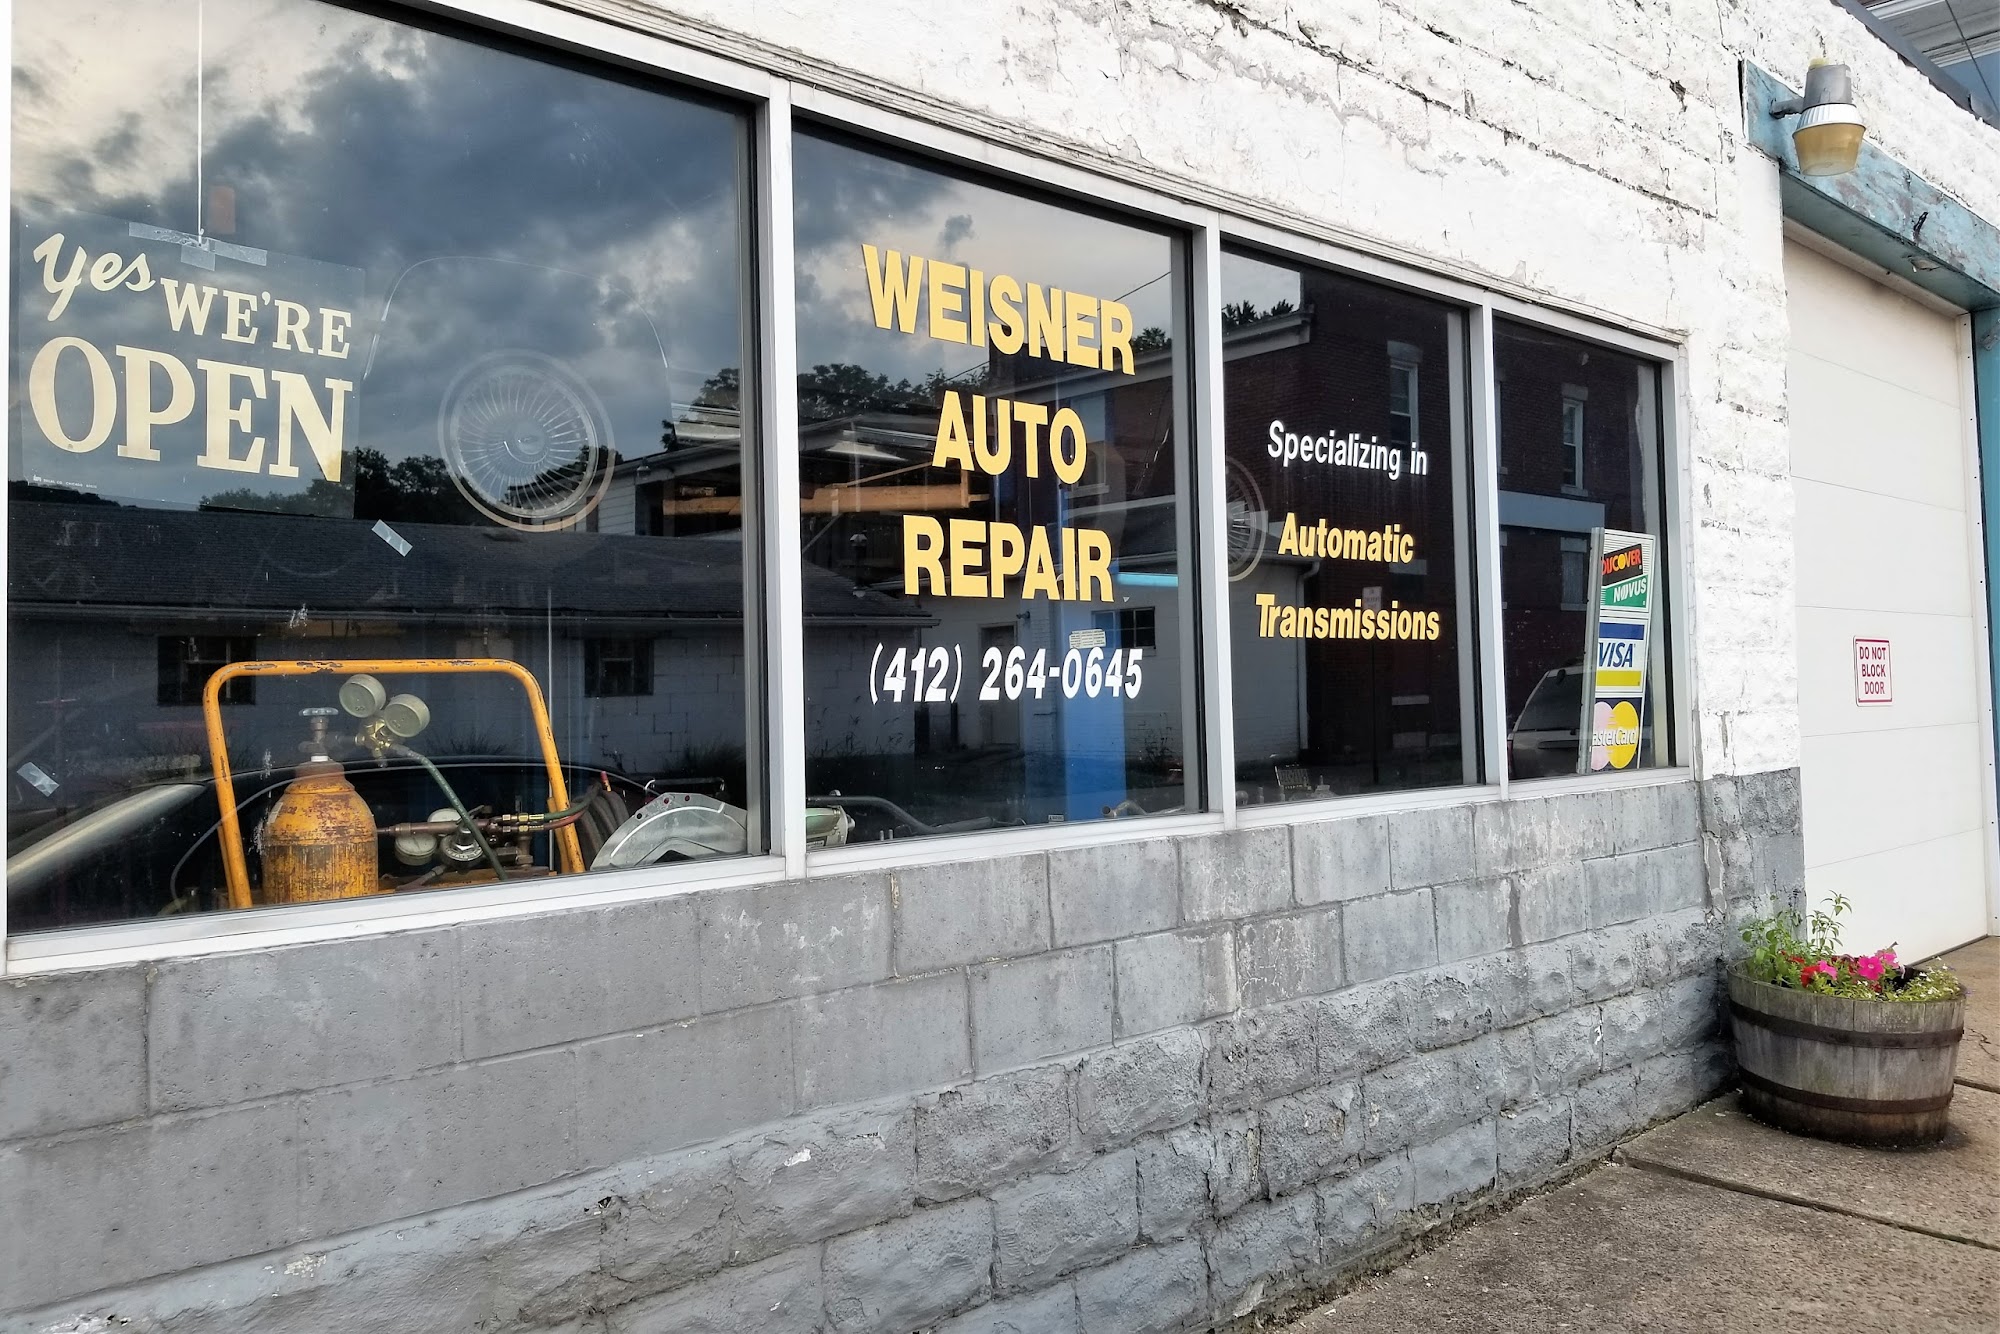 Weisner Auto Repair